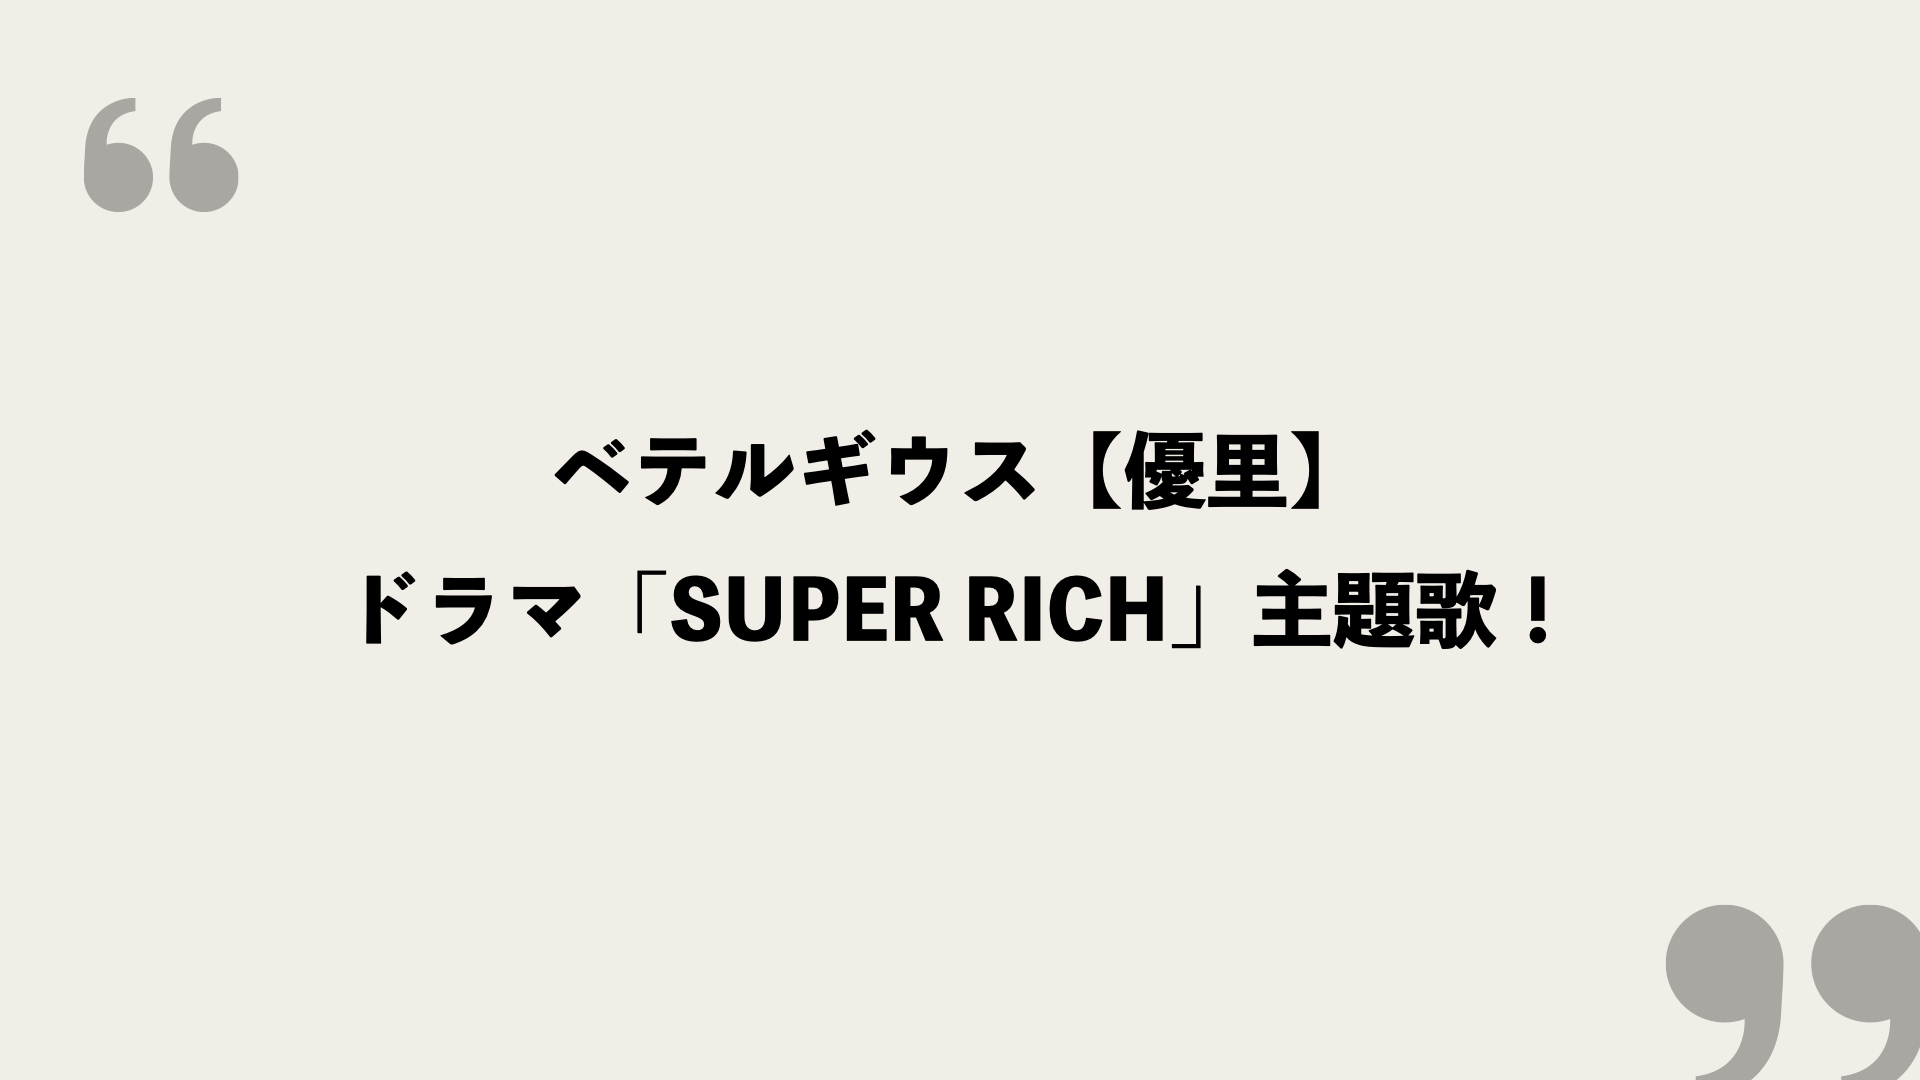 ベテルギウス 優里 歌詞の意味を考察 ドラマ Super Rich 主題歌 Framu Media